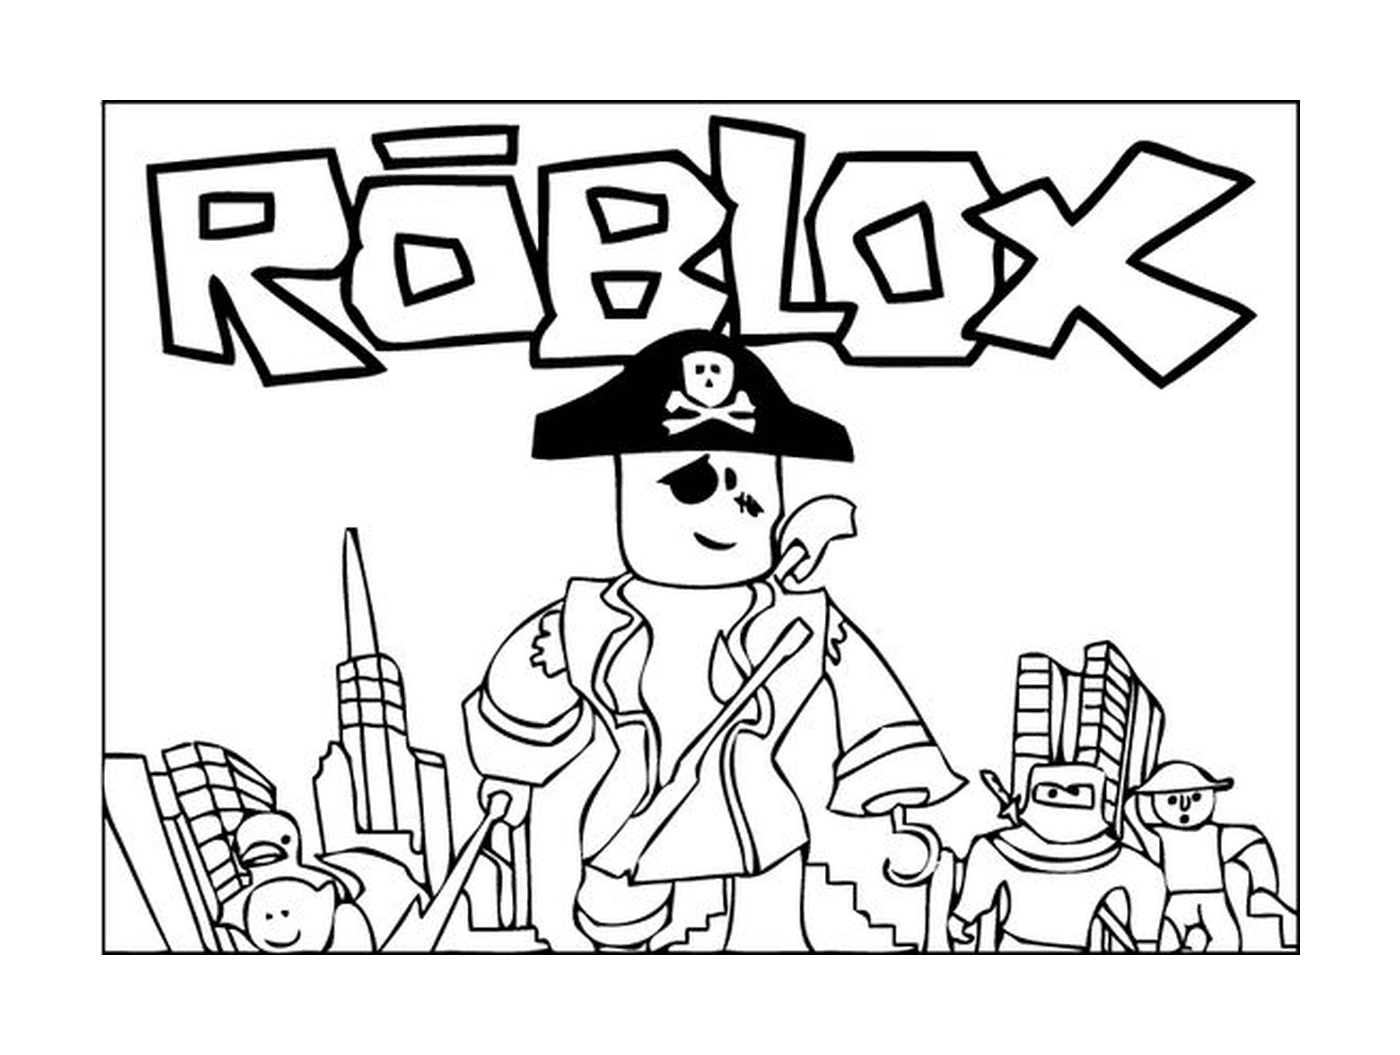  Construcción de Roblox 